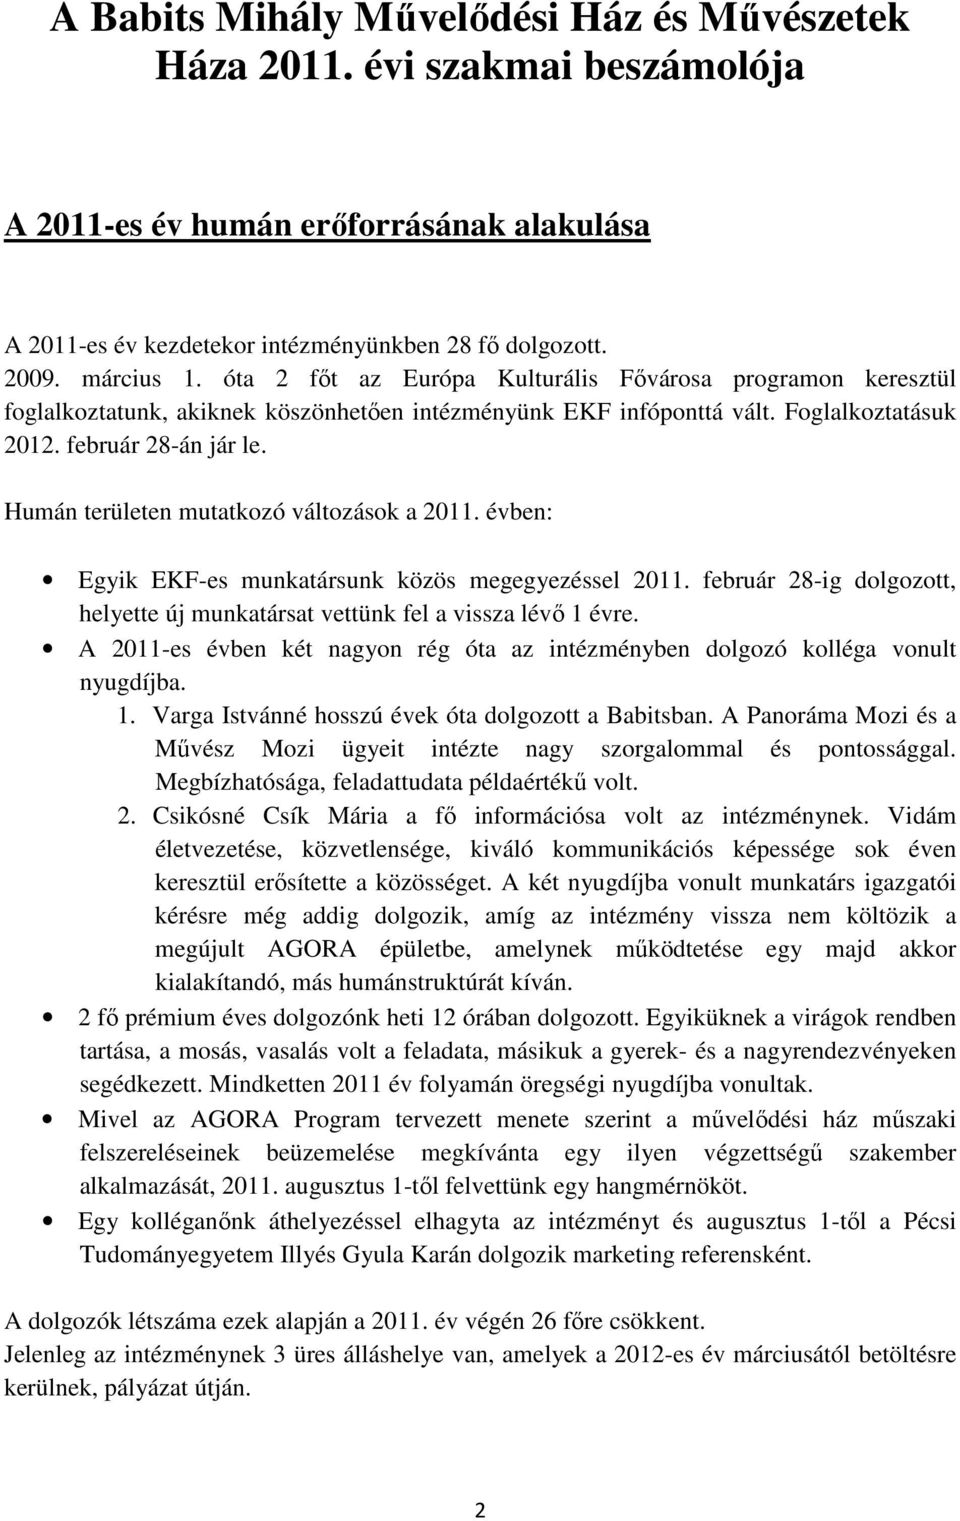 Humán területen mutatkozó változások a 2011. évben: Egyik EKF-es munkatársunk közös megegyezéssel 2011. február 28-ig dolgozott, helyette új munkatársat vettünk fel a vissza lévı 1 évre.